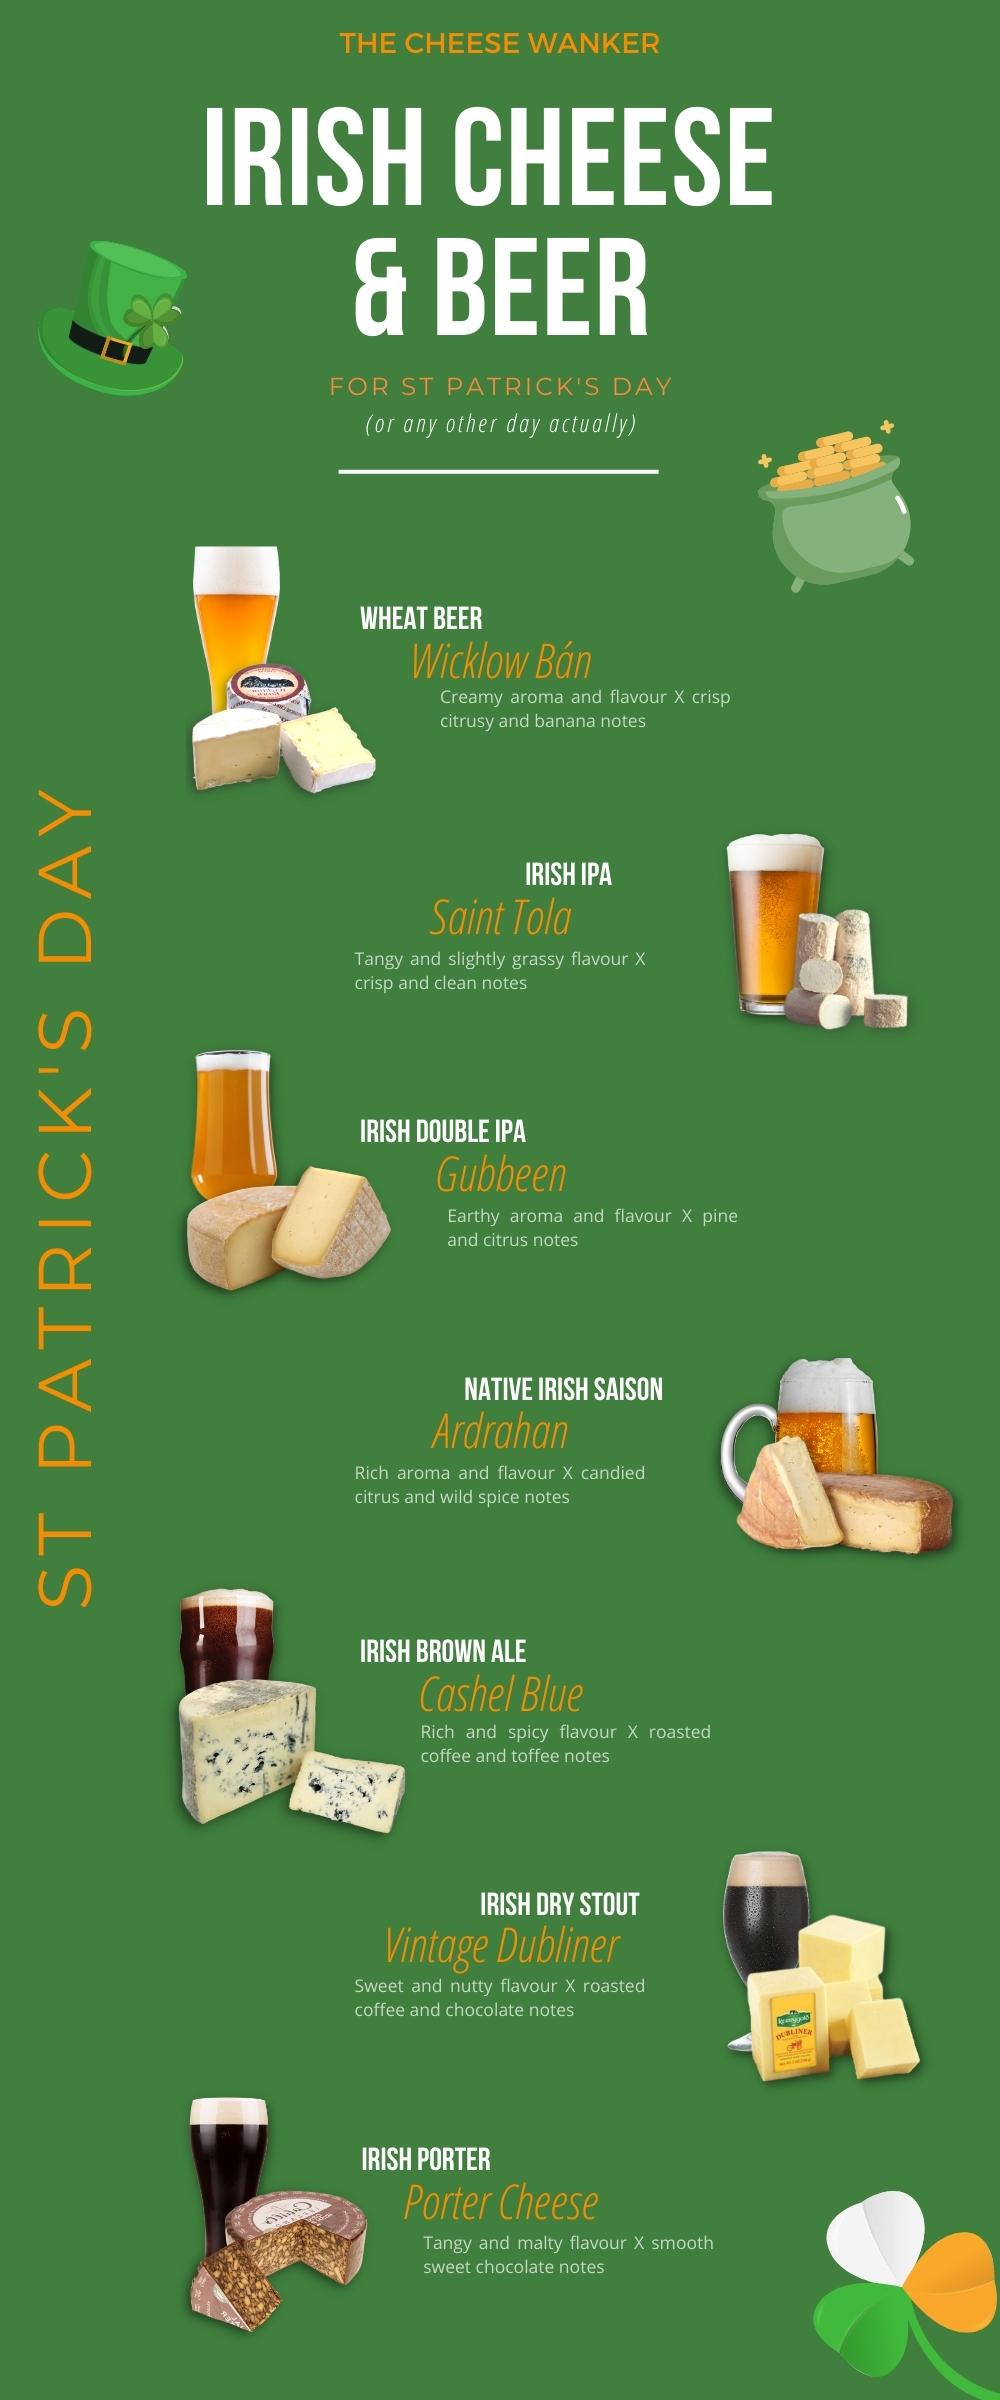 Irish Cheese & Beer Pairing Infographic